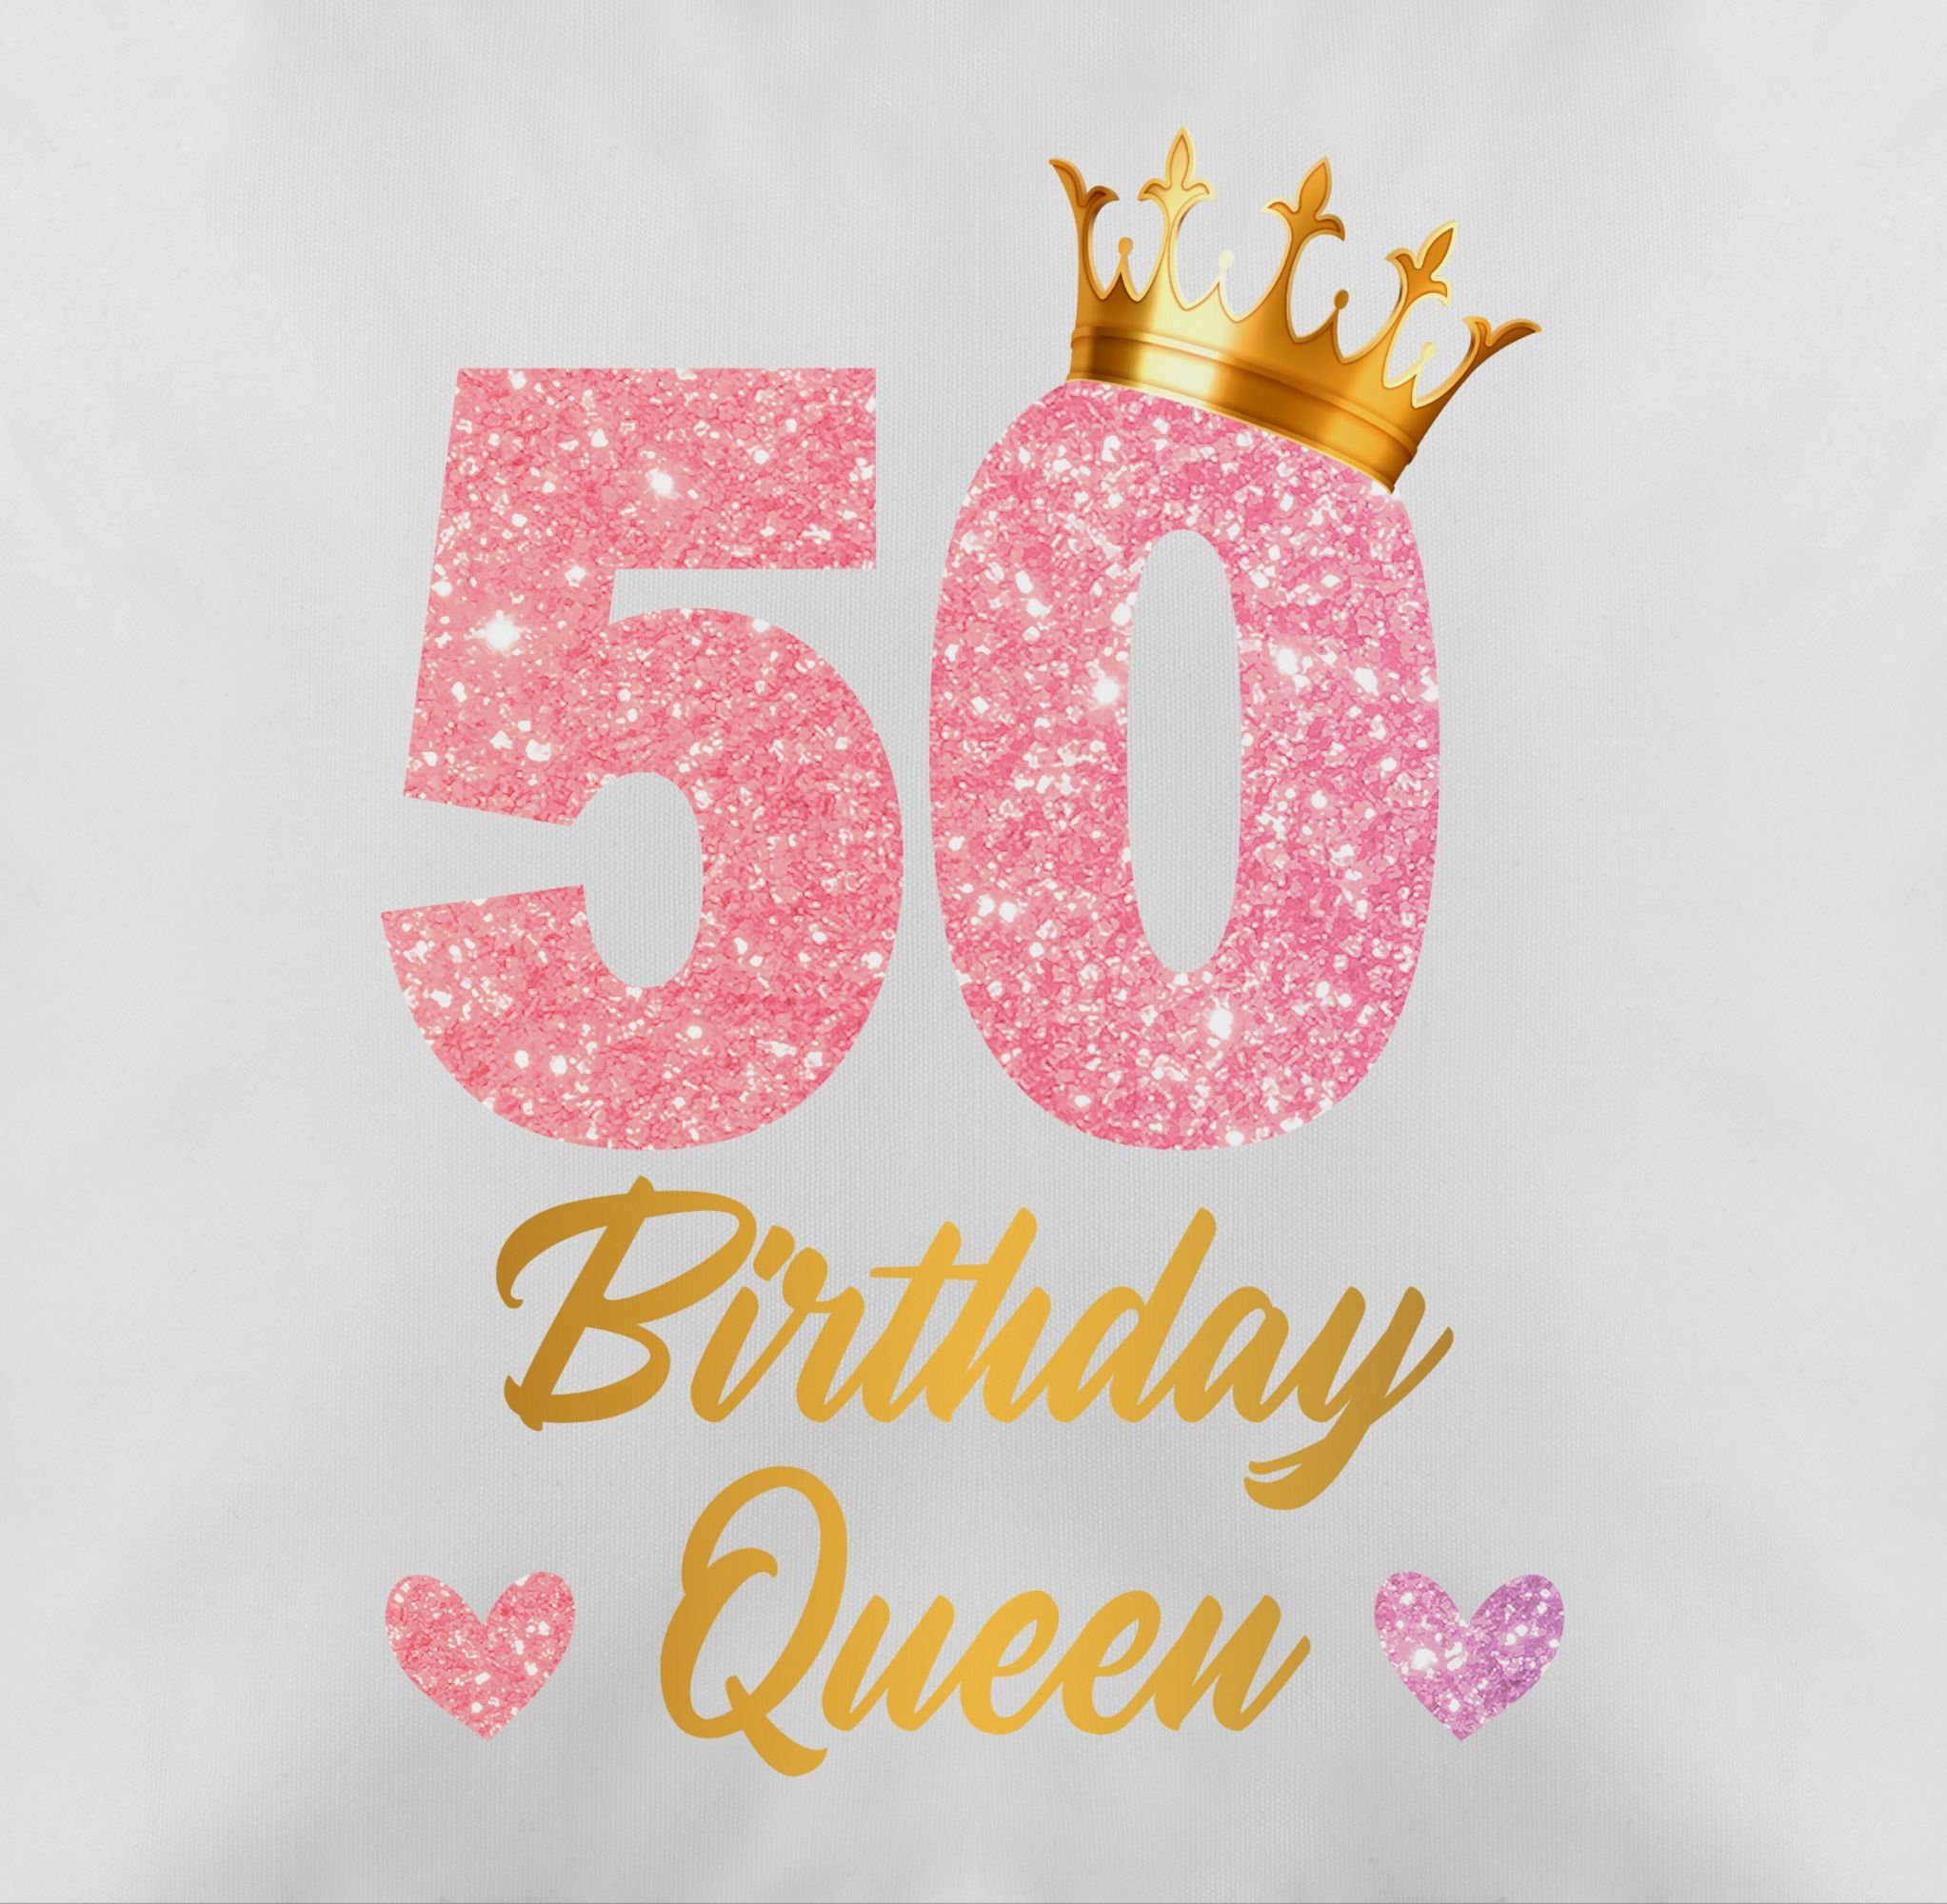 Weiß 50. Kissen Dekokissen 3 Geburtstagsgeschenk 50, Shirtracer Queen Königin 50 Geburtstags Geburtstag Birthday